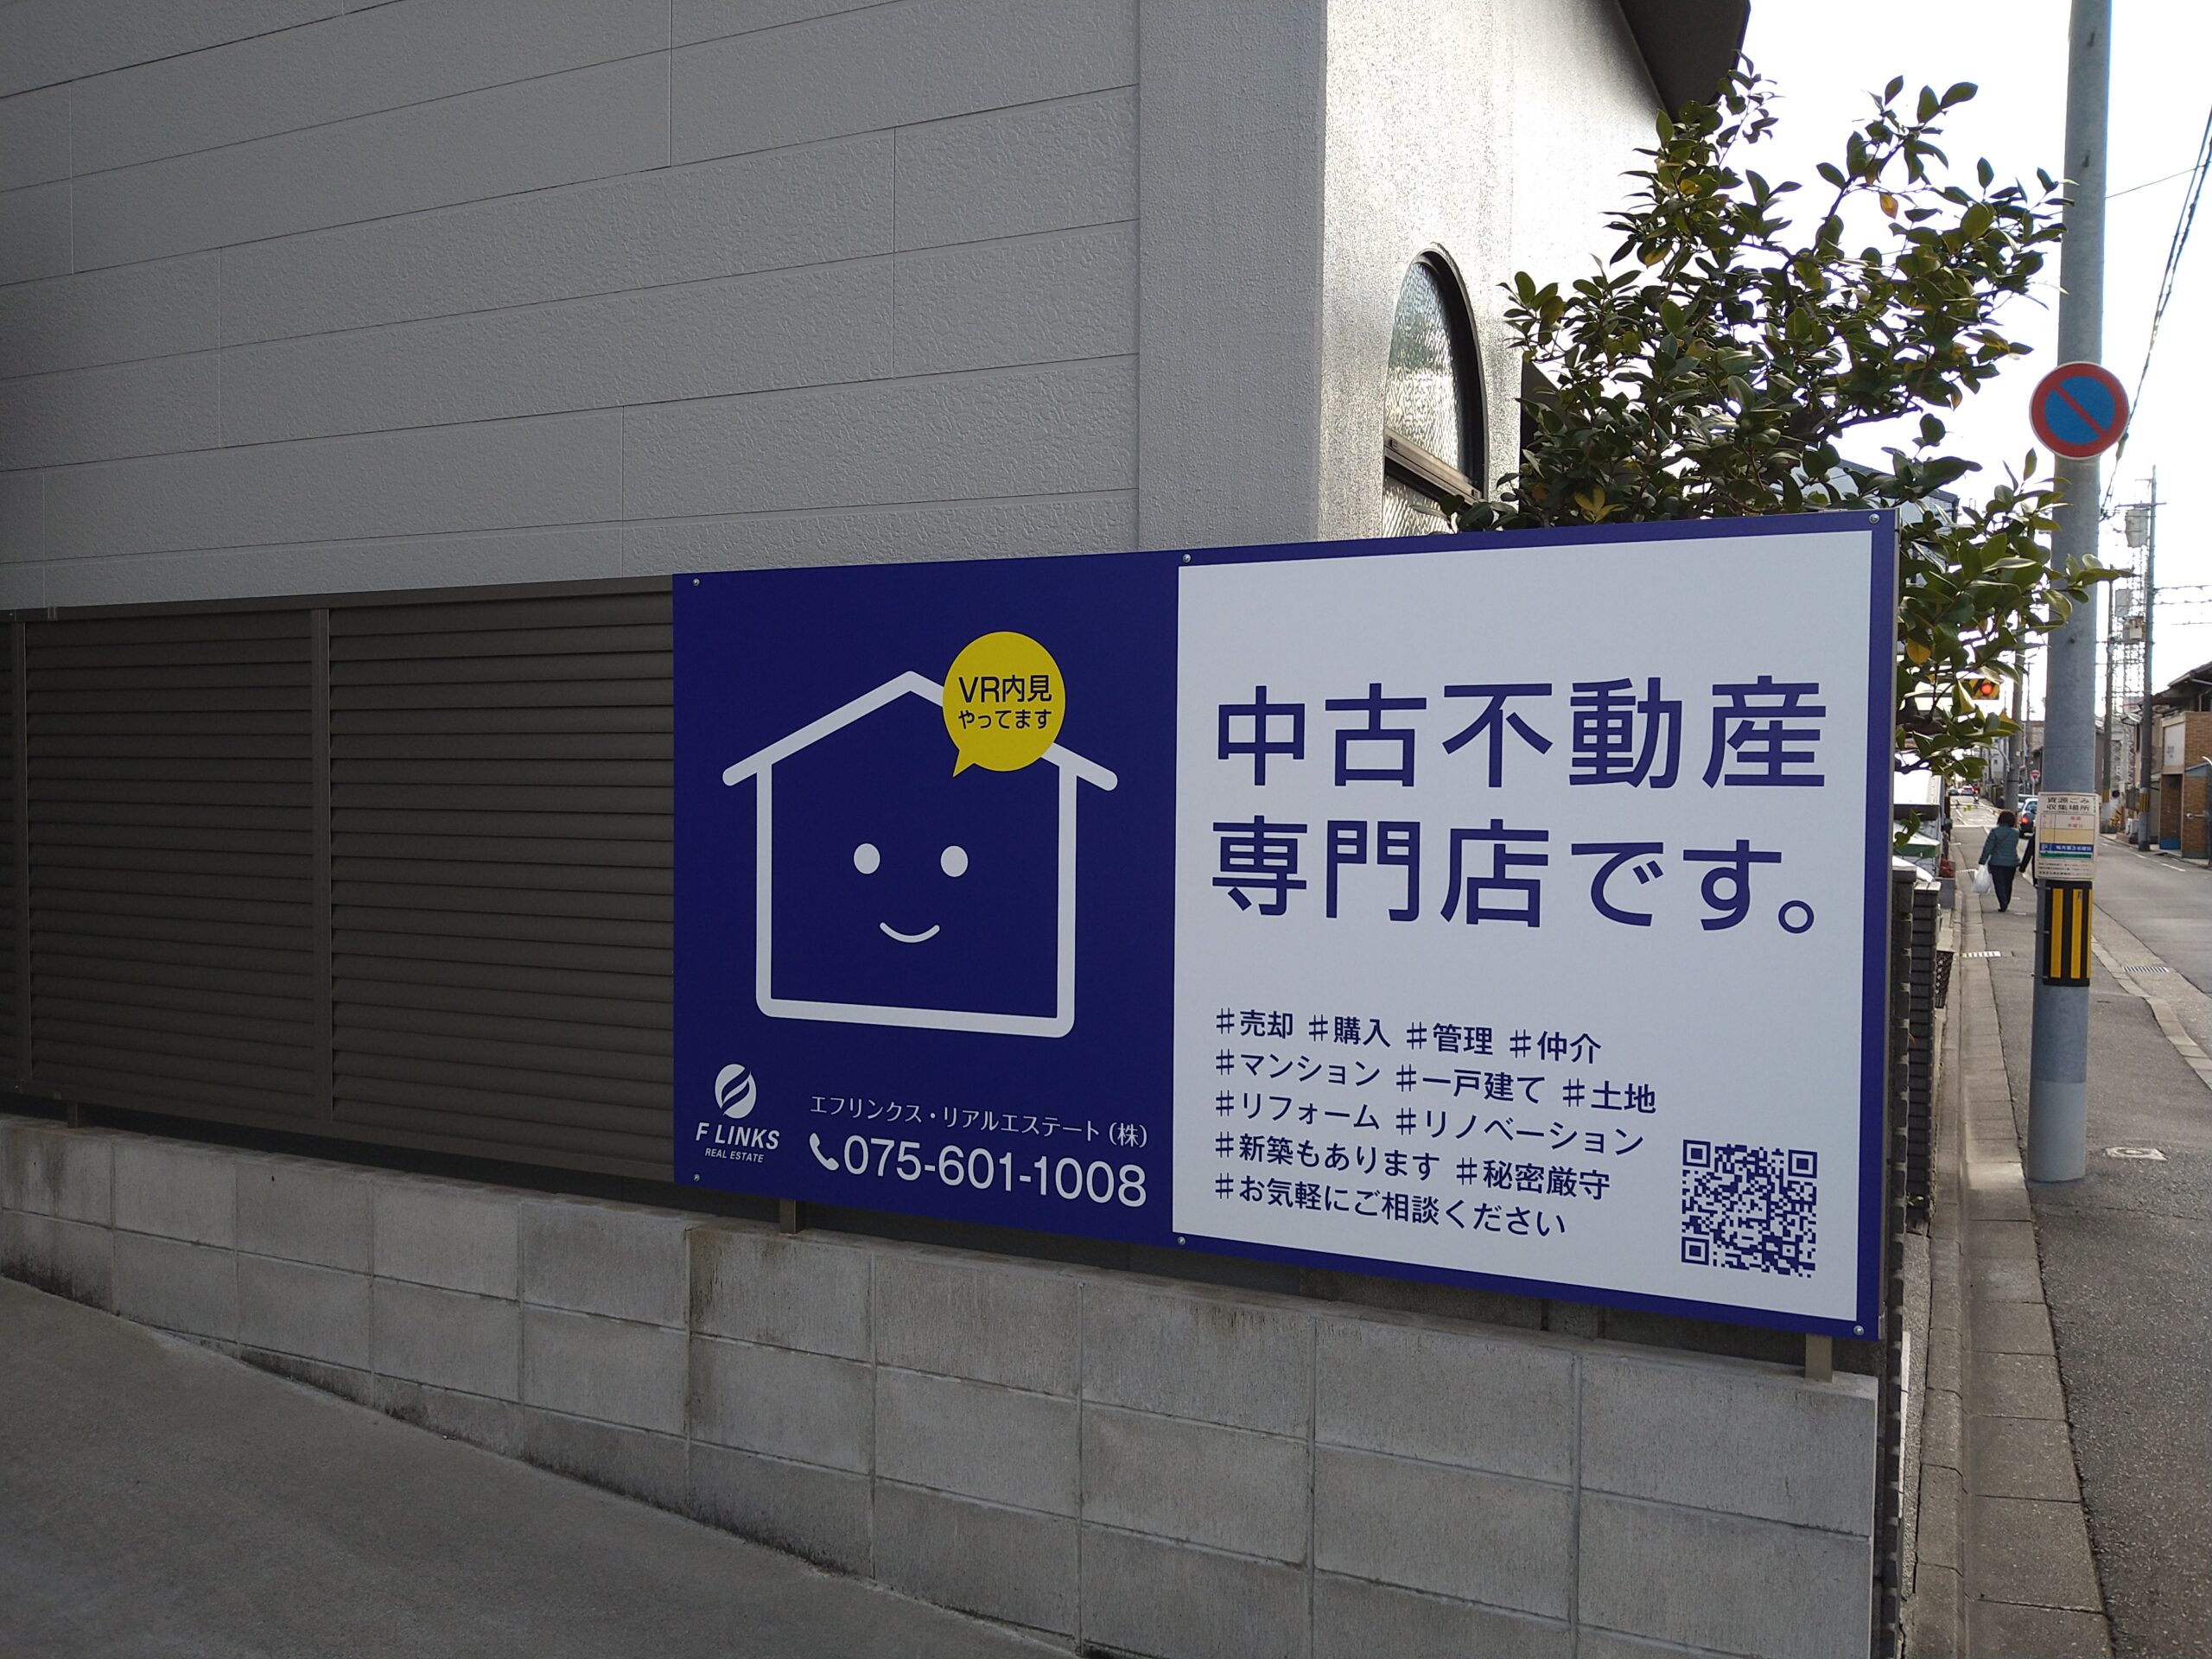 アルミ複合板インクジェット出力貼 | 京都看板製作28年、3000件以上